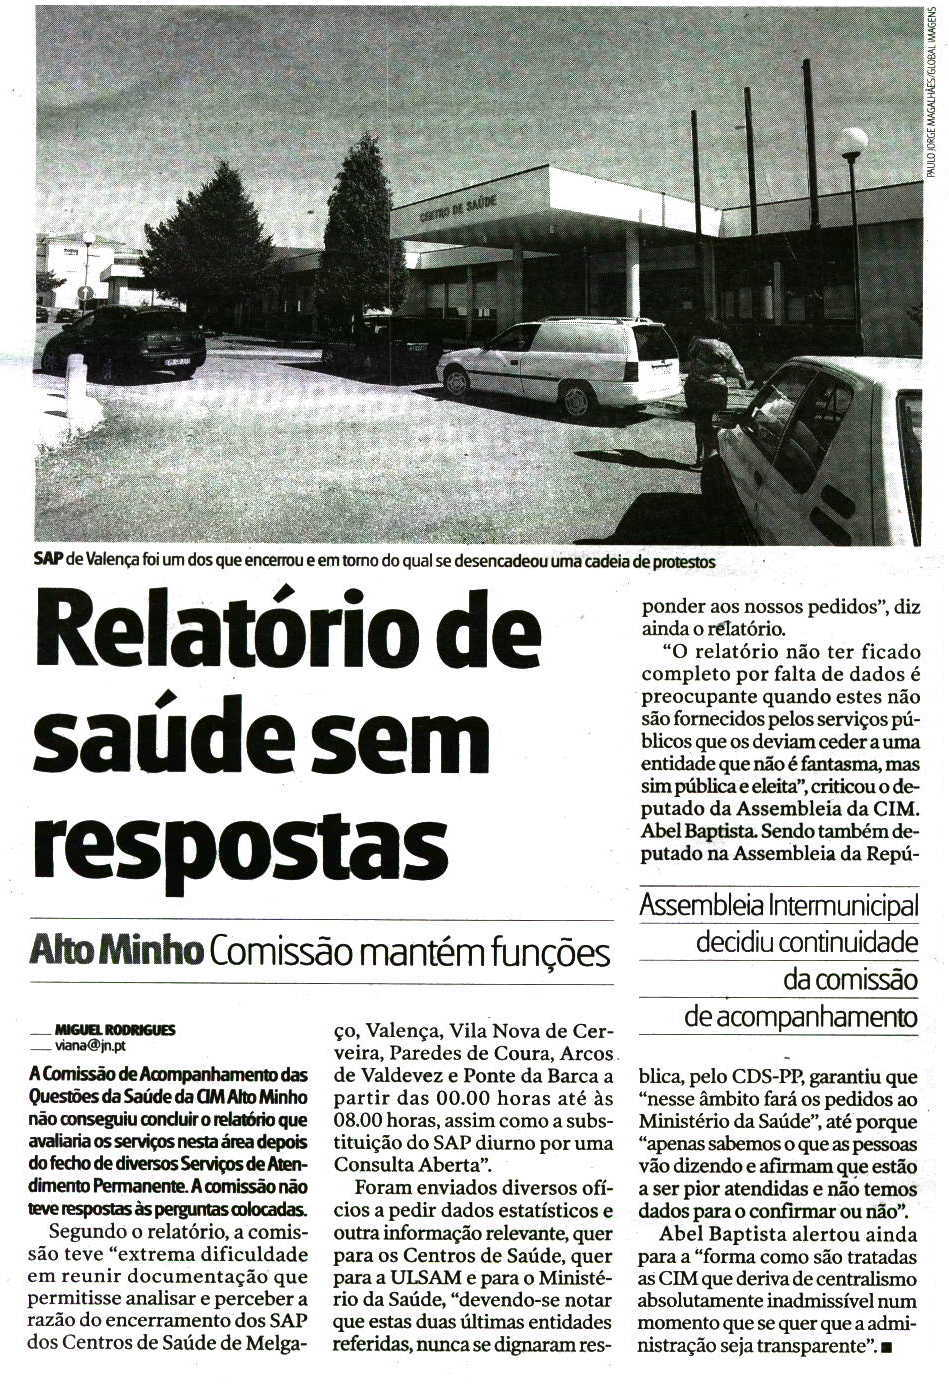 A25 Jornal de Notícias - Norte ID: 32473508 27-10-2010 Tiragem: